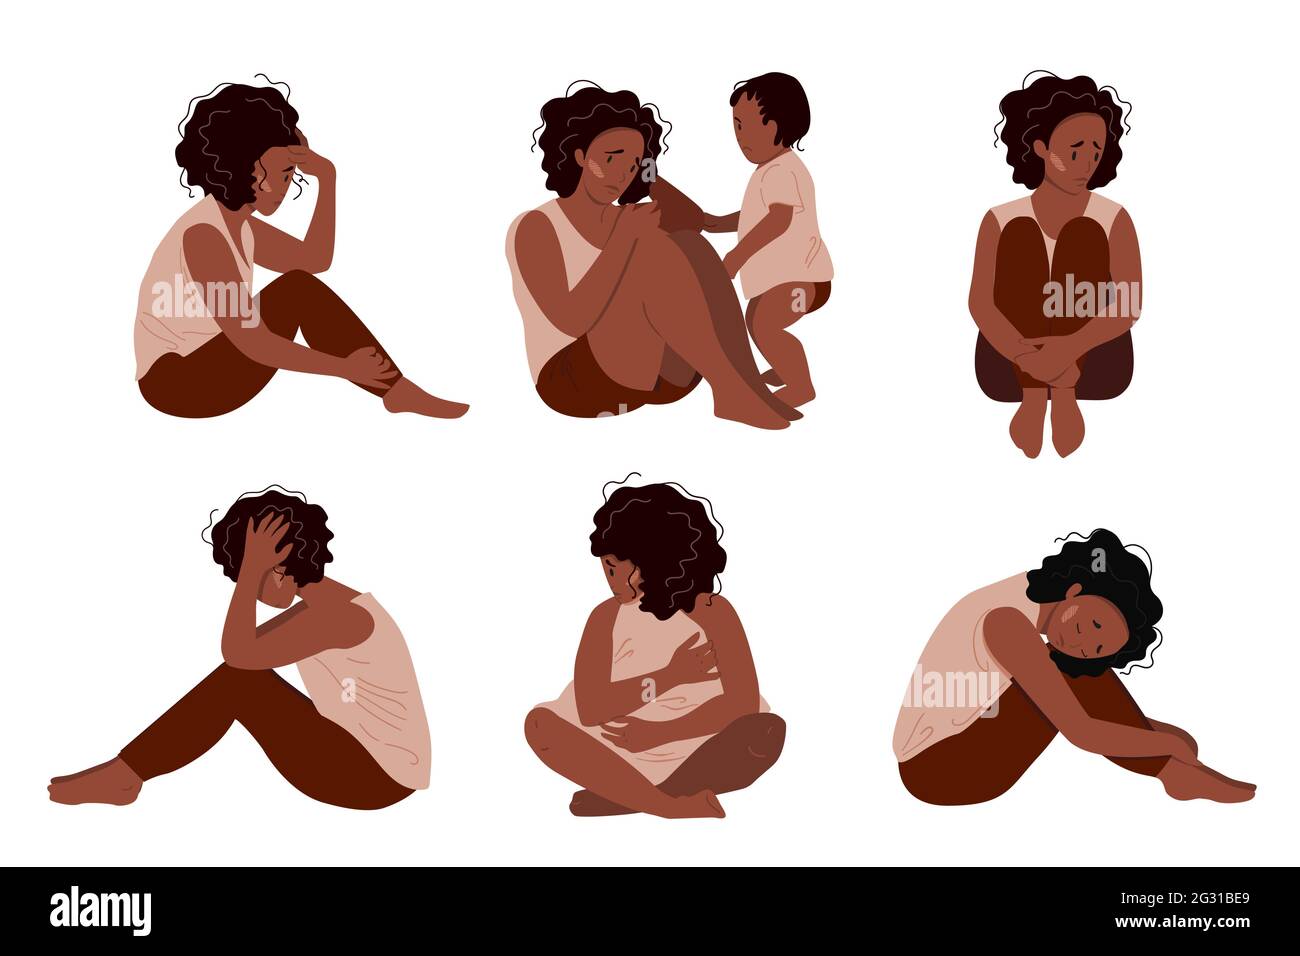 Traurige Mutter, die mit ihrem weinenden Kind auf dem Boden sitzt. Postpartale Depression Konzept. Bunte Vektor-Illustration in flachen Cartoon-Stil. Stock Vektor